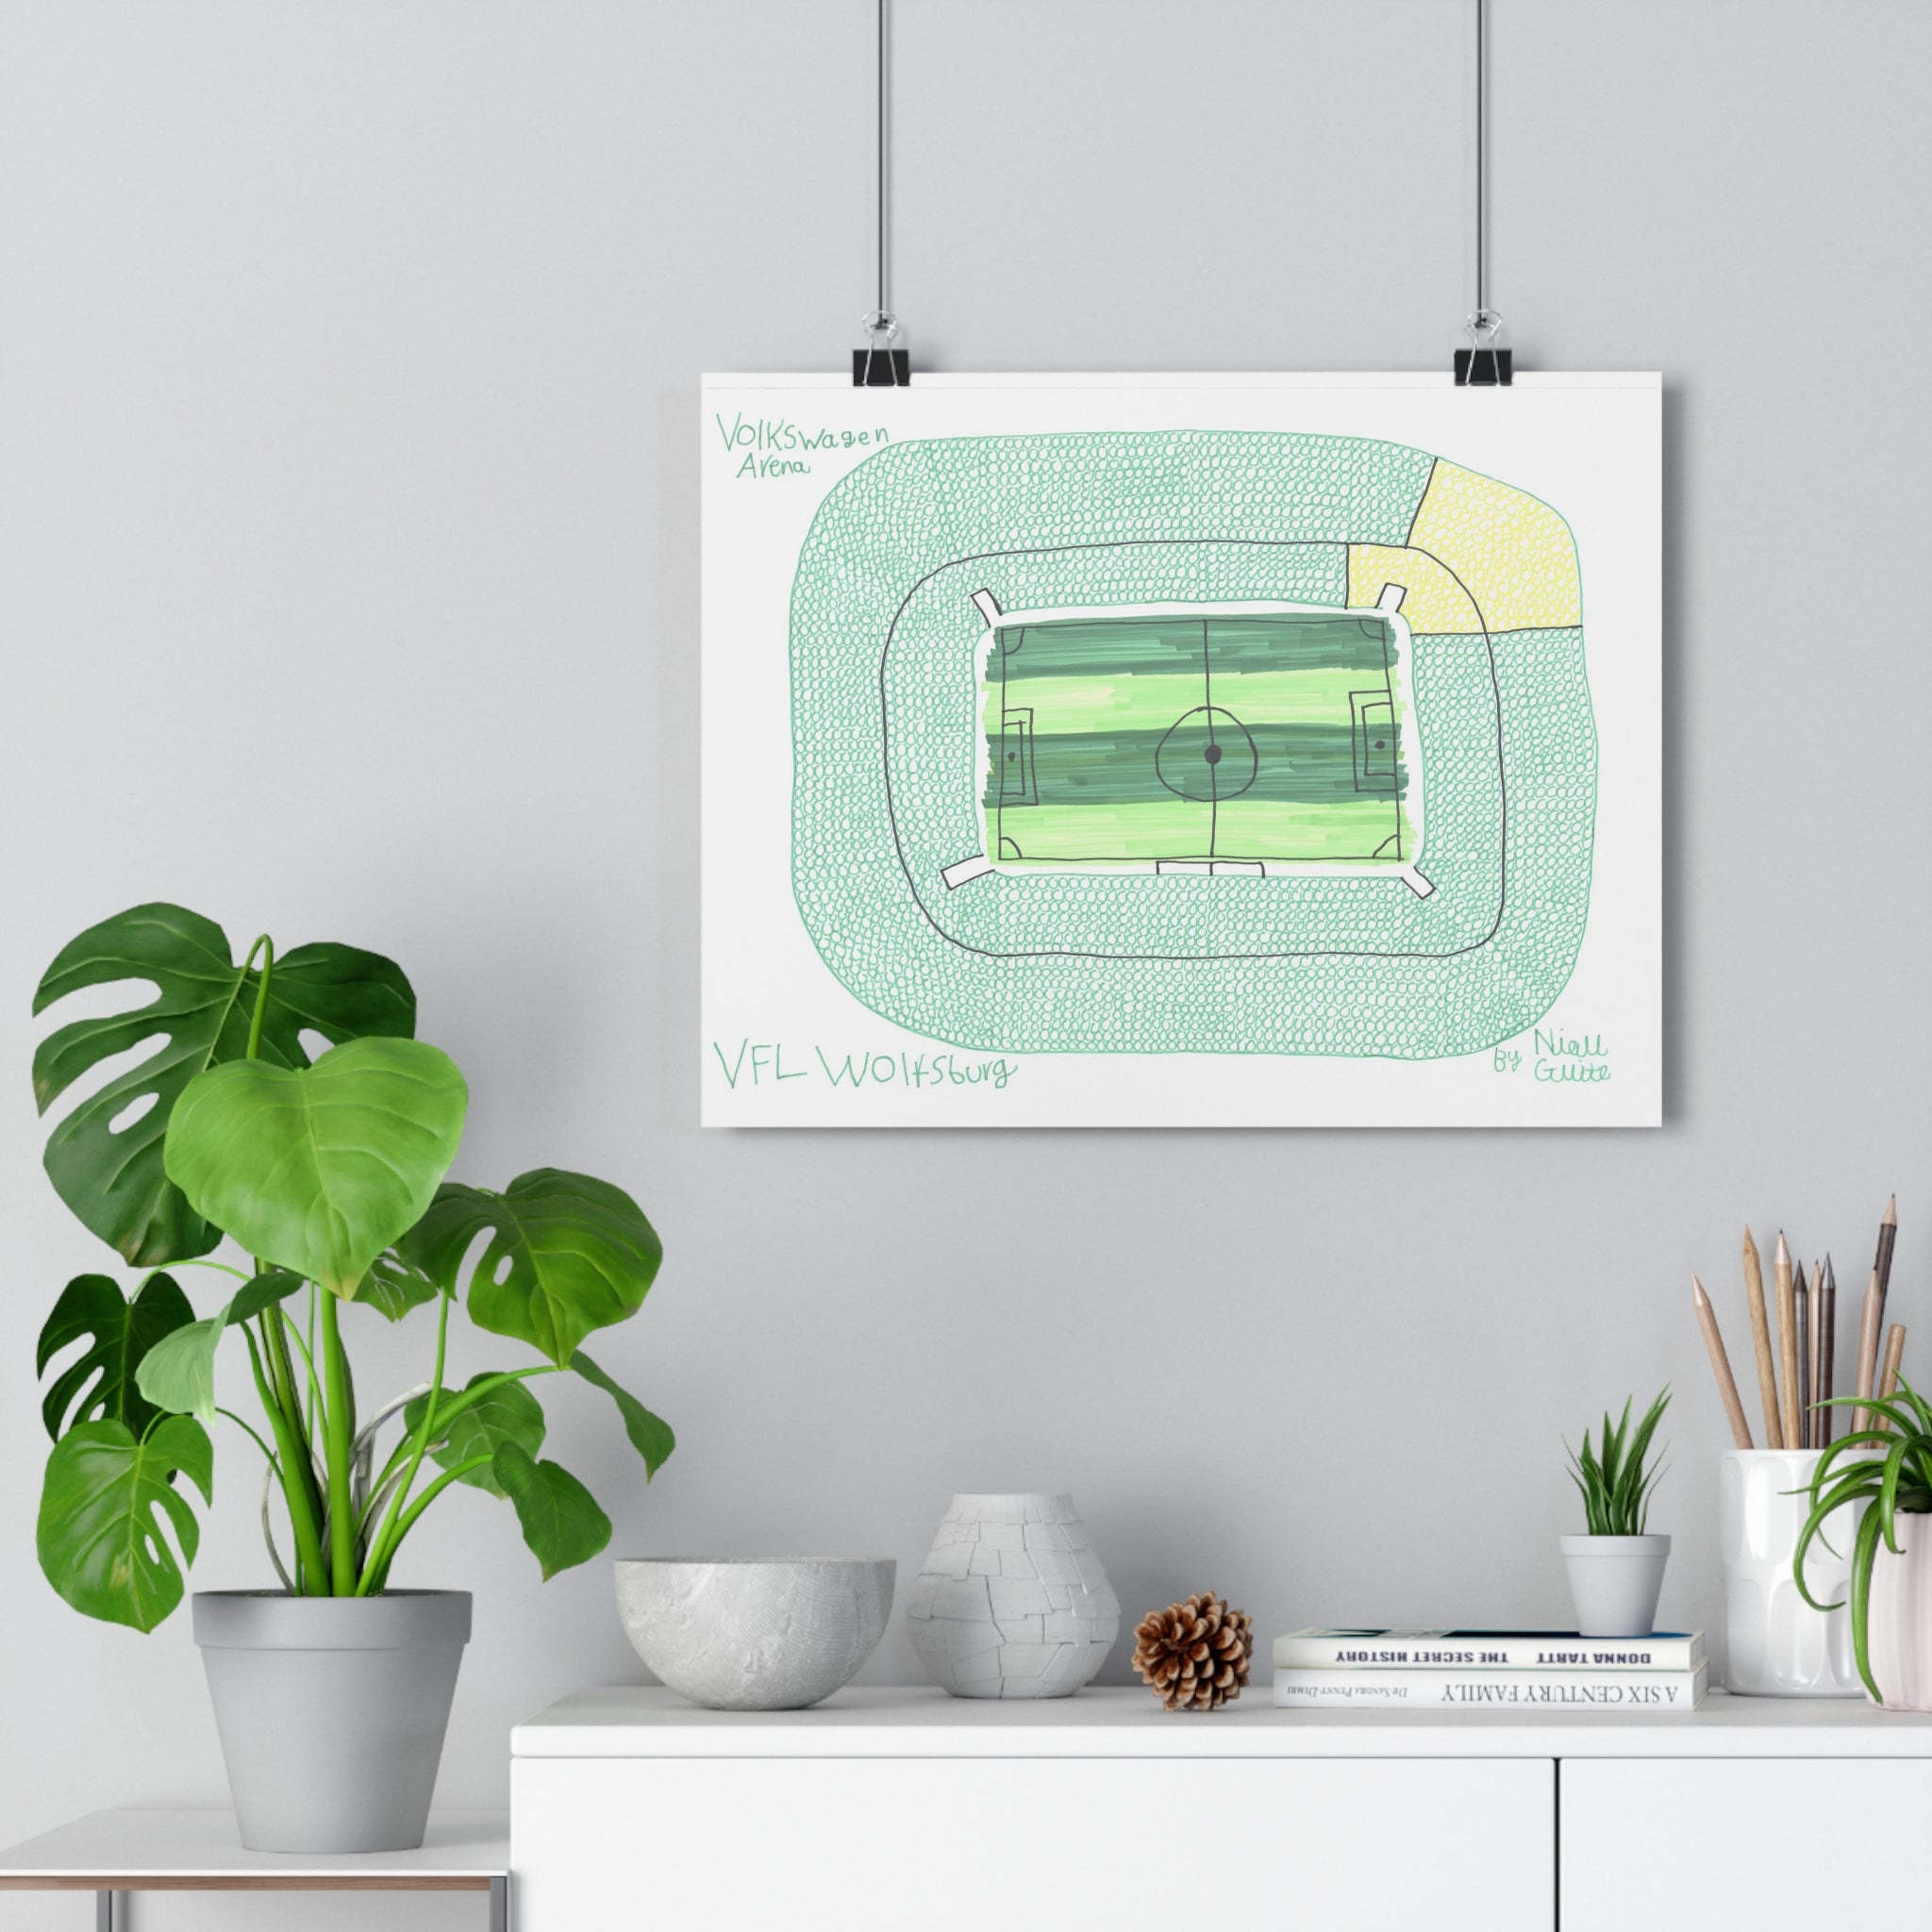 Vfl Wolfsburg - Volkswagen Arena - Print